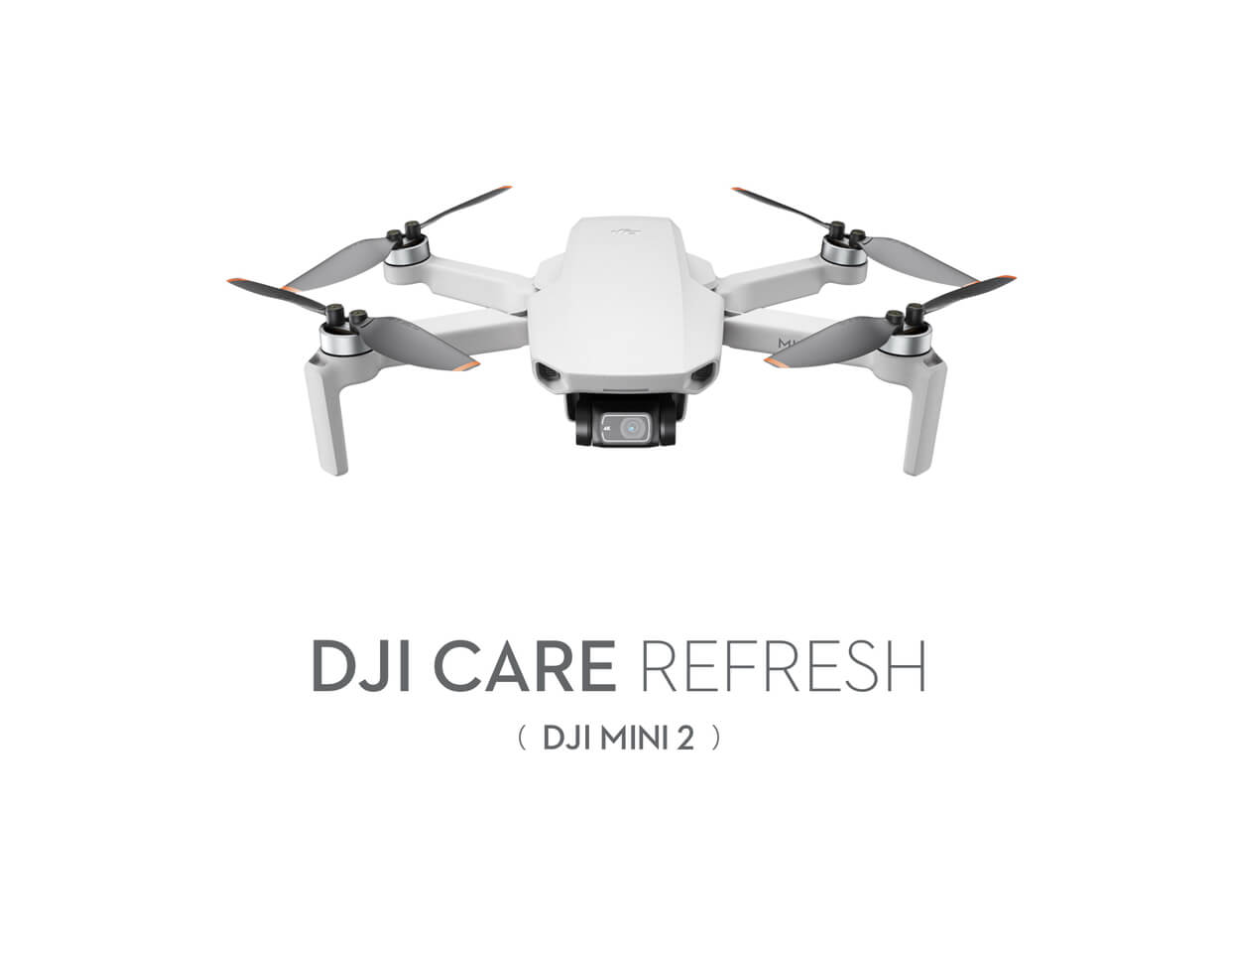 DJI Mini 2 Care Refresh - 2 Year Plan